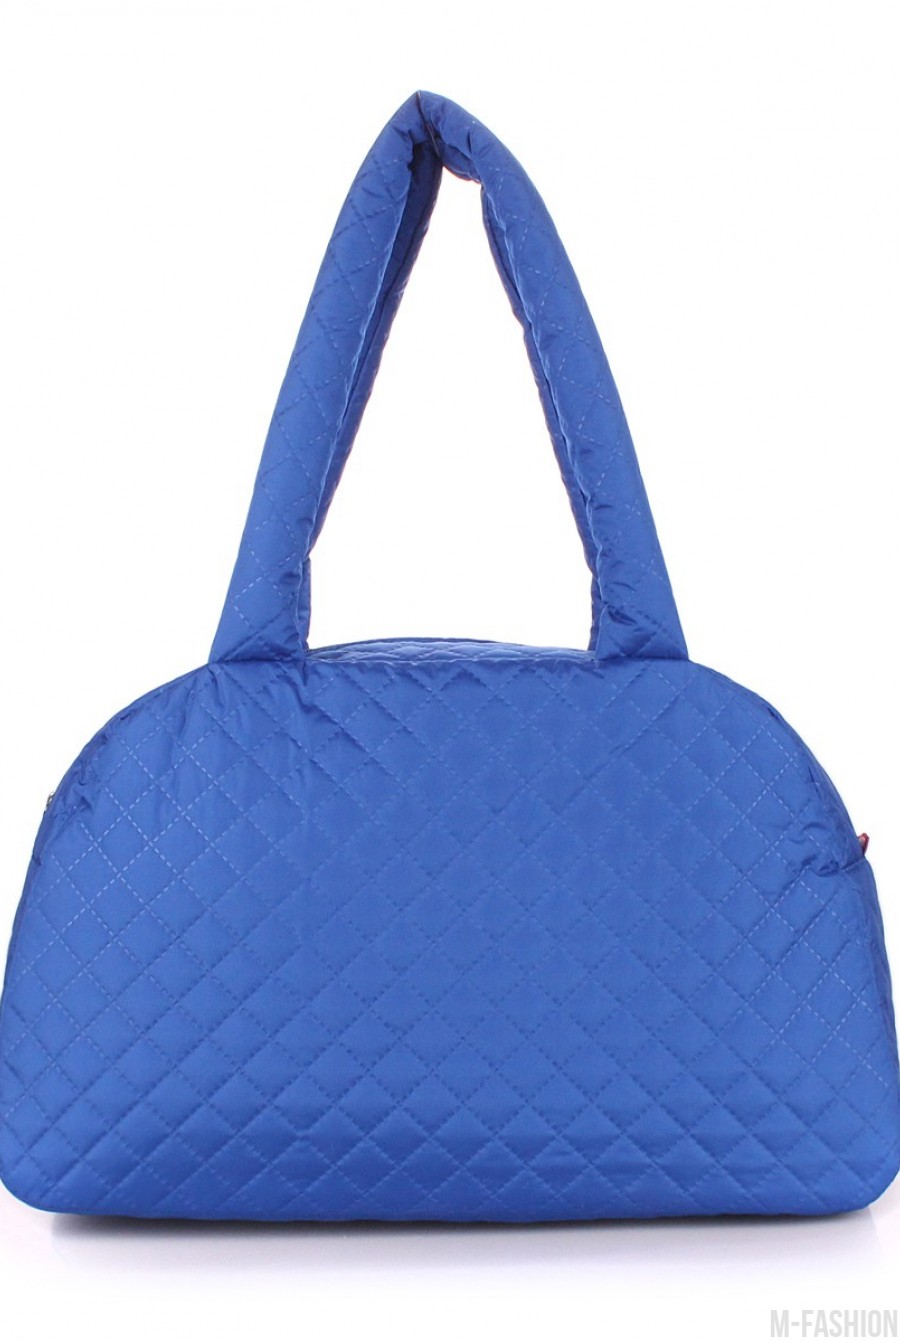 Стеганая сумка-саквояж в сине-матовом цвете - Фото 1